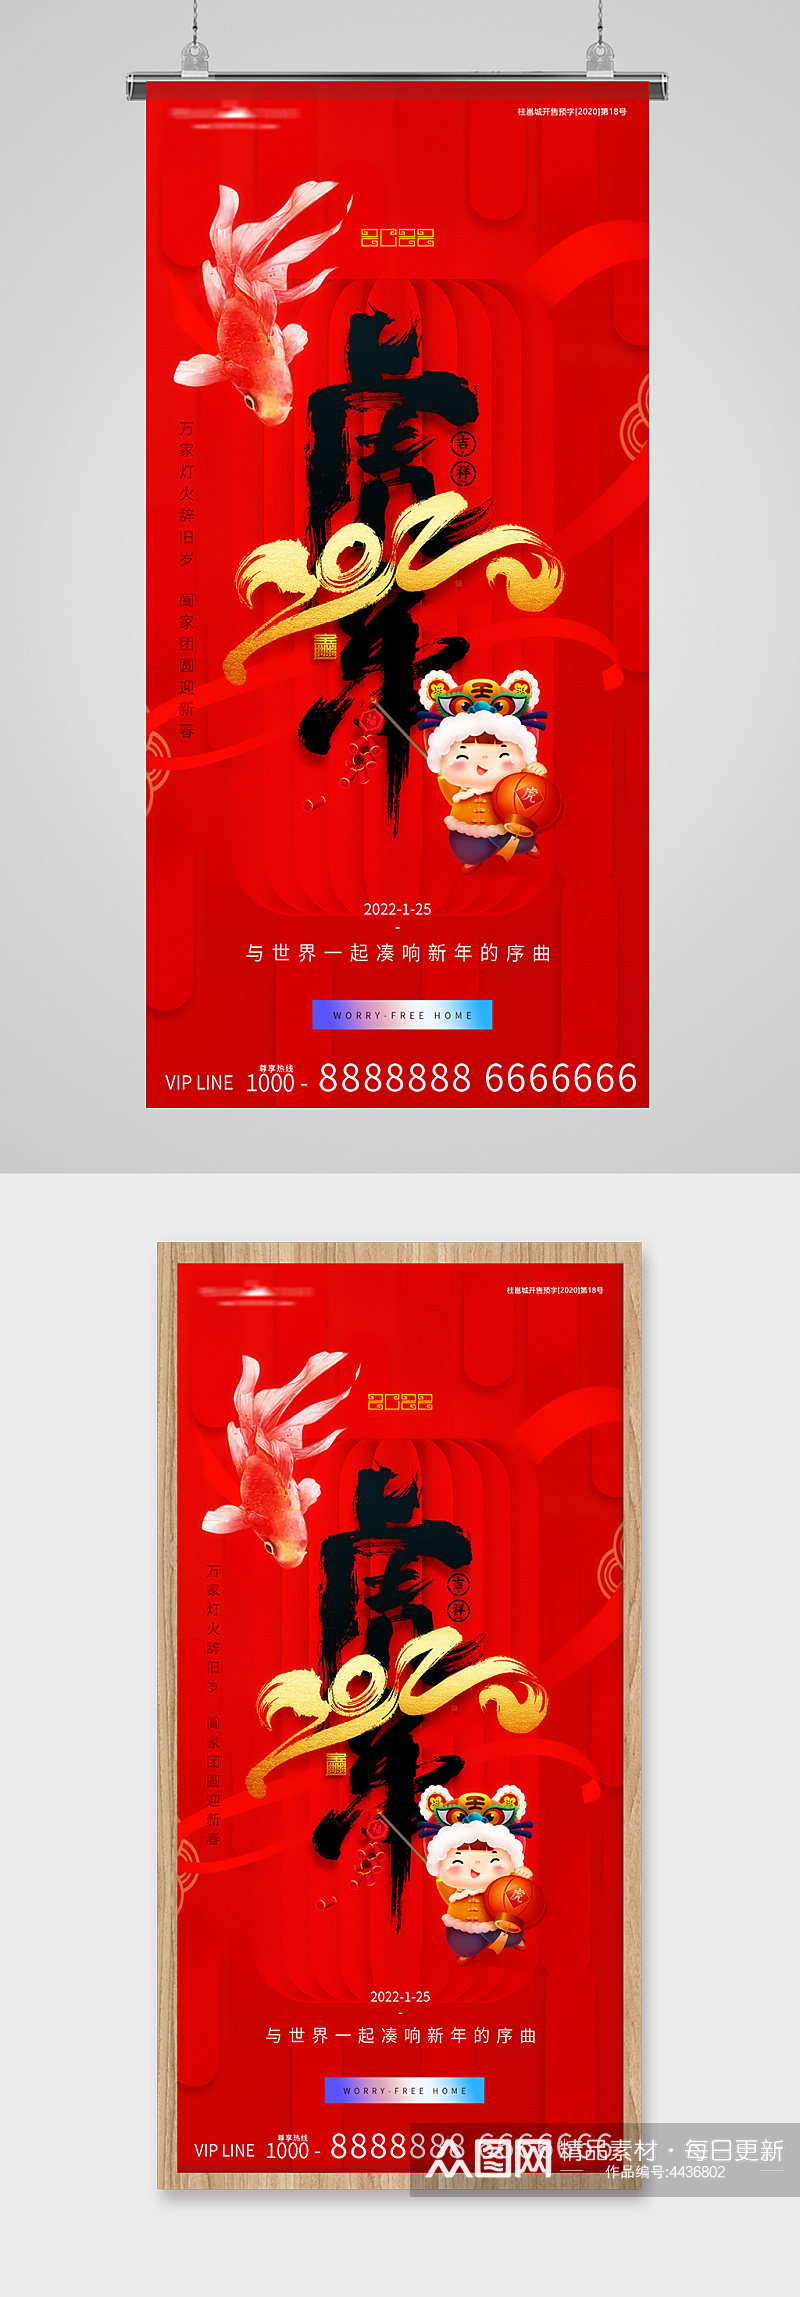 虎年新年字体喜气春节海报素材